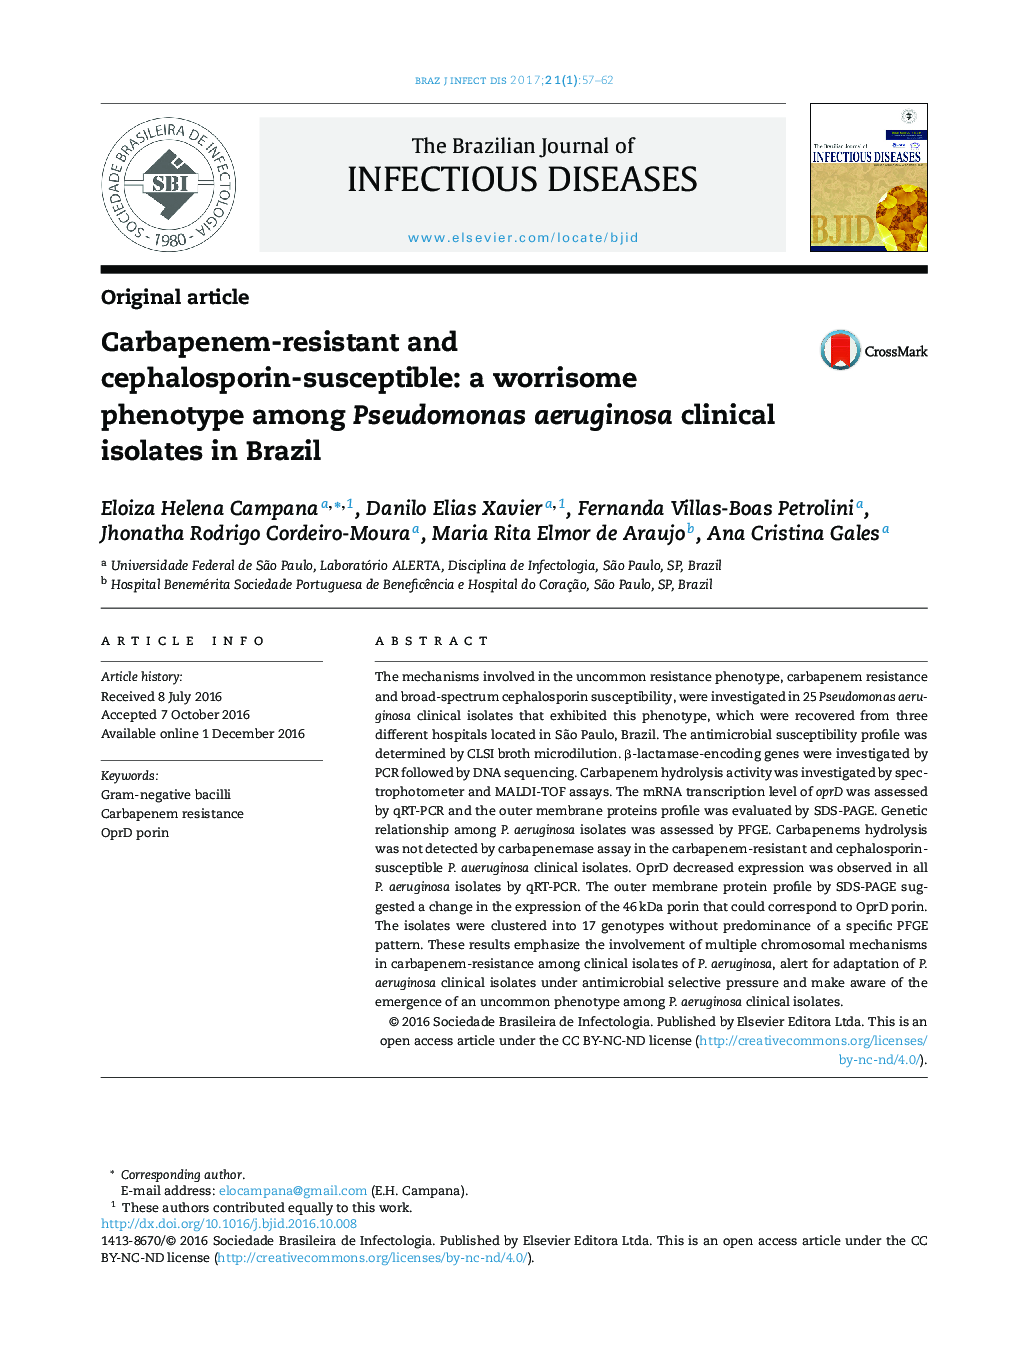 حساسیت مقاوم به کرباپنم و سفالوسپورین: یک فنوتیپ نگران کننده در جدایه های بالینی پوسیدوموناس آئروژینوزا در برزیل 